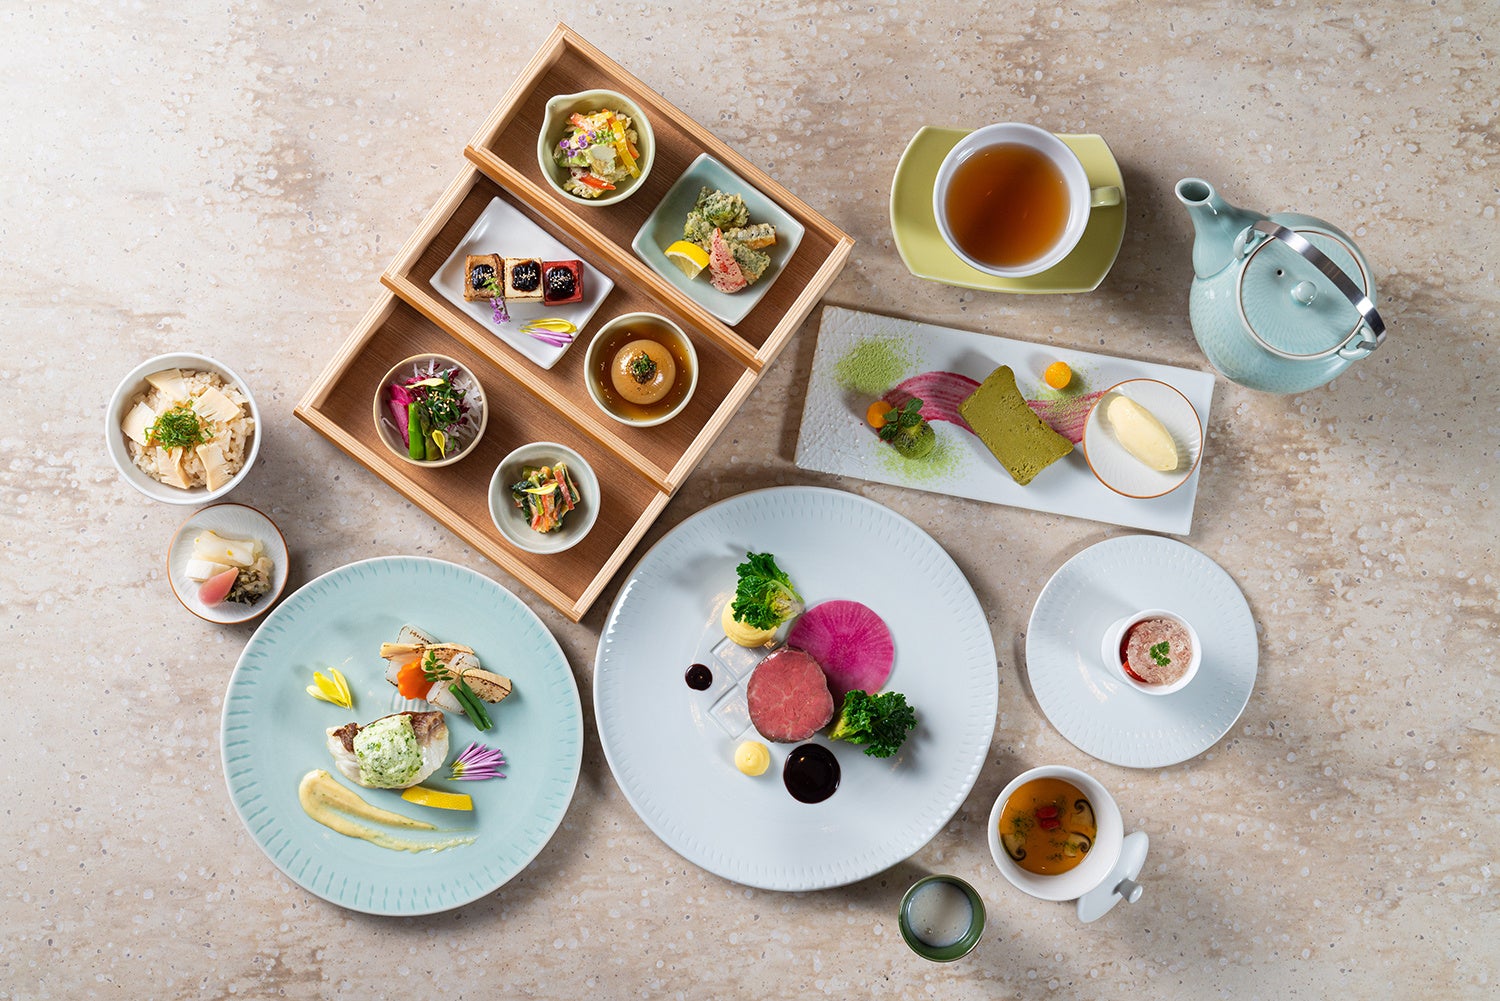 ザ・ホテル青龍 京都清水　かつての学校給食をヒントに、こだわりのコースを愉しむ大人の食体験 「九食」を提供